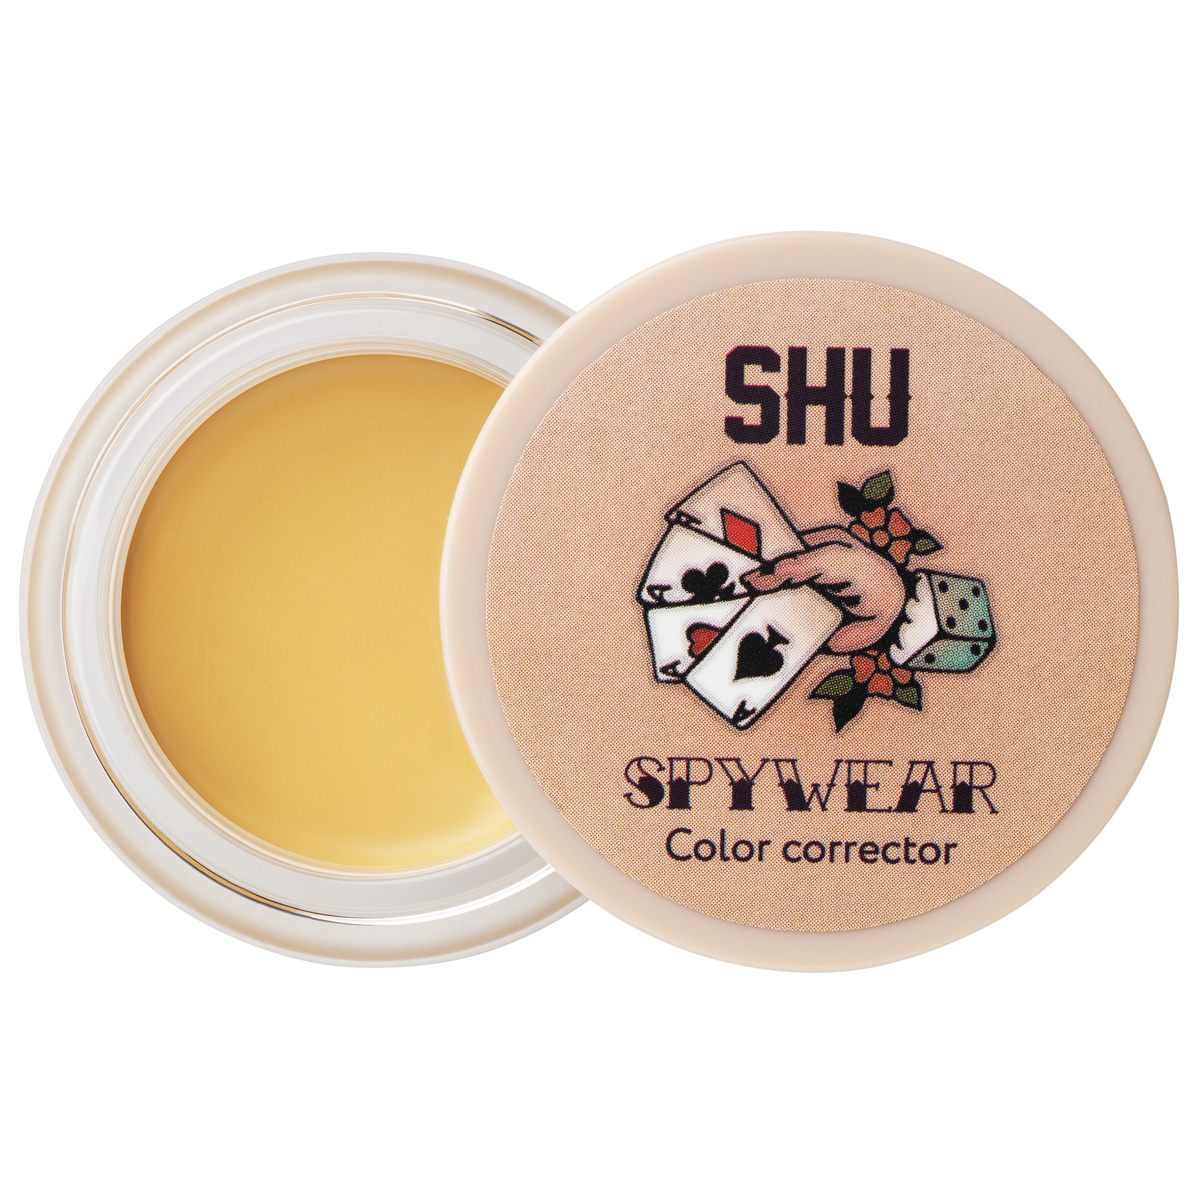 Корректор для лица SHU высокопигментированный Spywear тон 33 желтый shu корректор высокопигментированный для лица 33 желтый spywear 2 8 гр